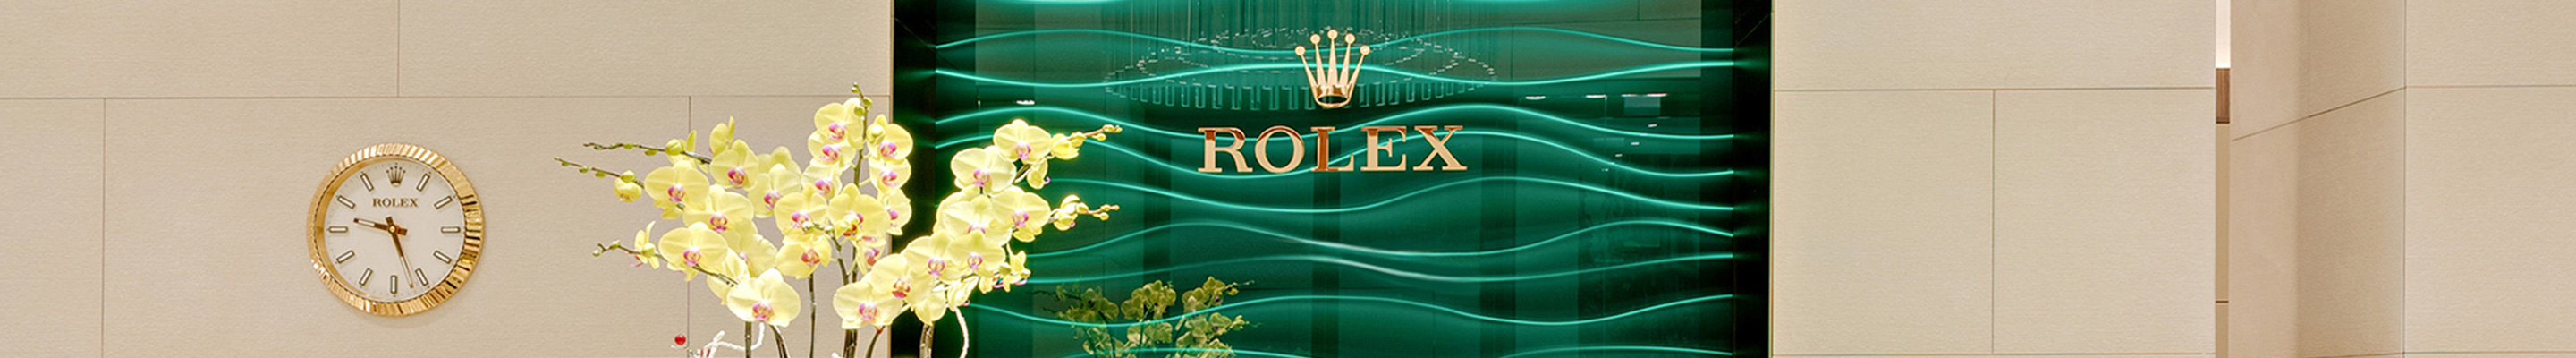 Our Rolex Team